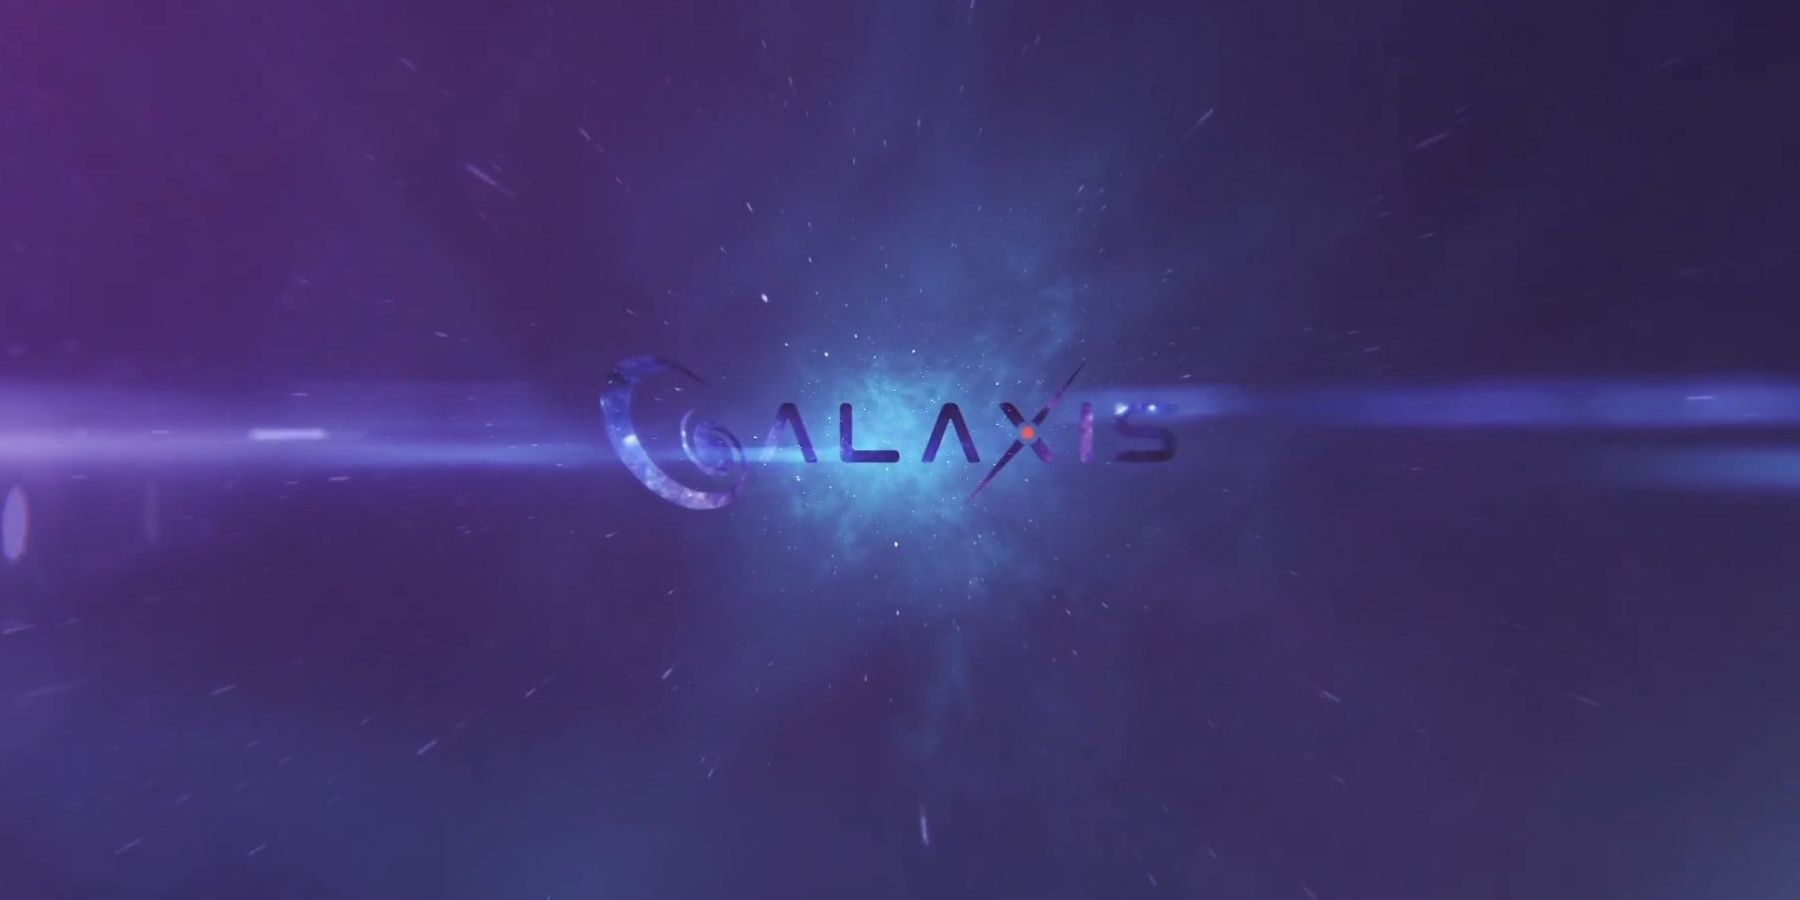 Galaxis 인터뷰 : Max Gallardo CEO는 스트리밍 플랫폼의 포인트 시스템, 커뮤니티 중재 등을 세부 사항